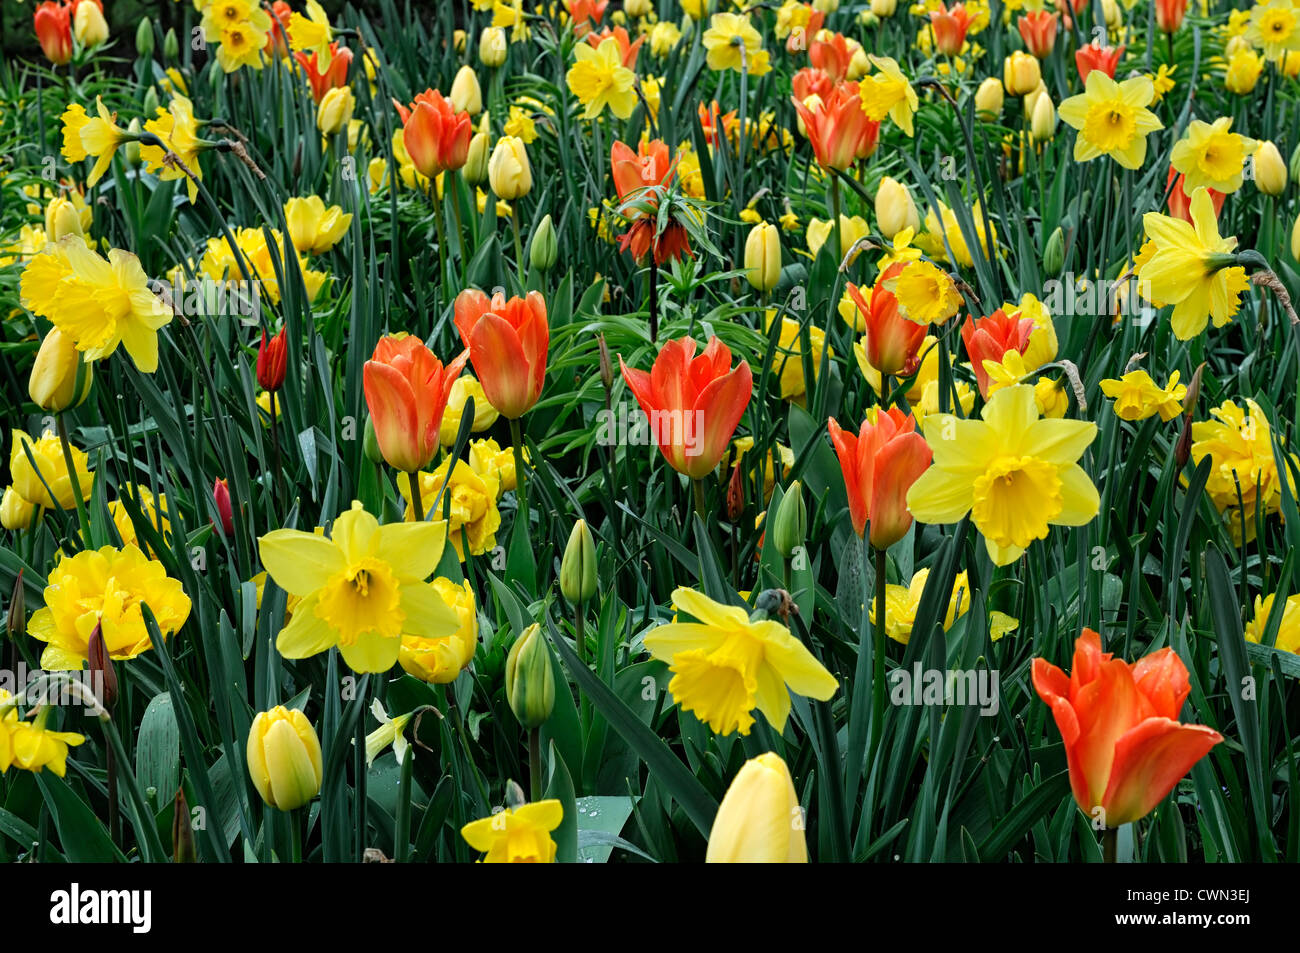 Mischbett Grenze Frühling blühende Zwiebeln gelb orange Farbe Combo Kombination mischen gemischte Pflanzung Display Systems Stockfoto